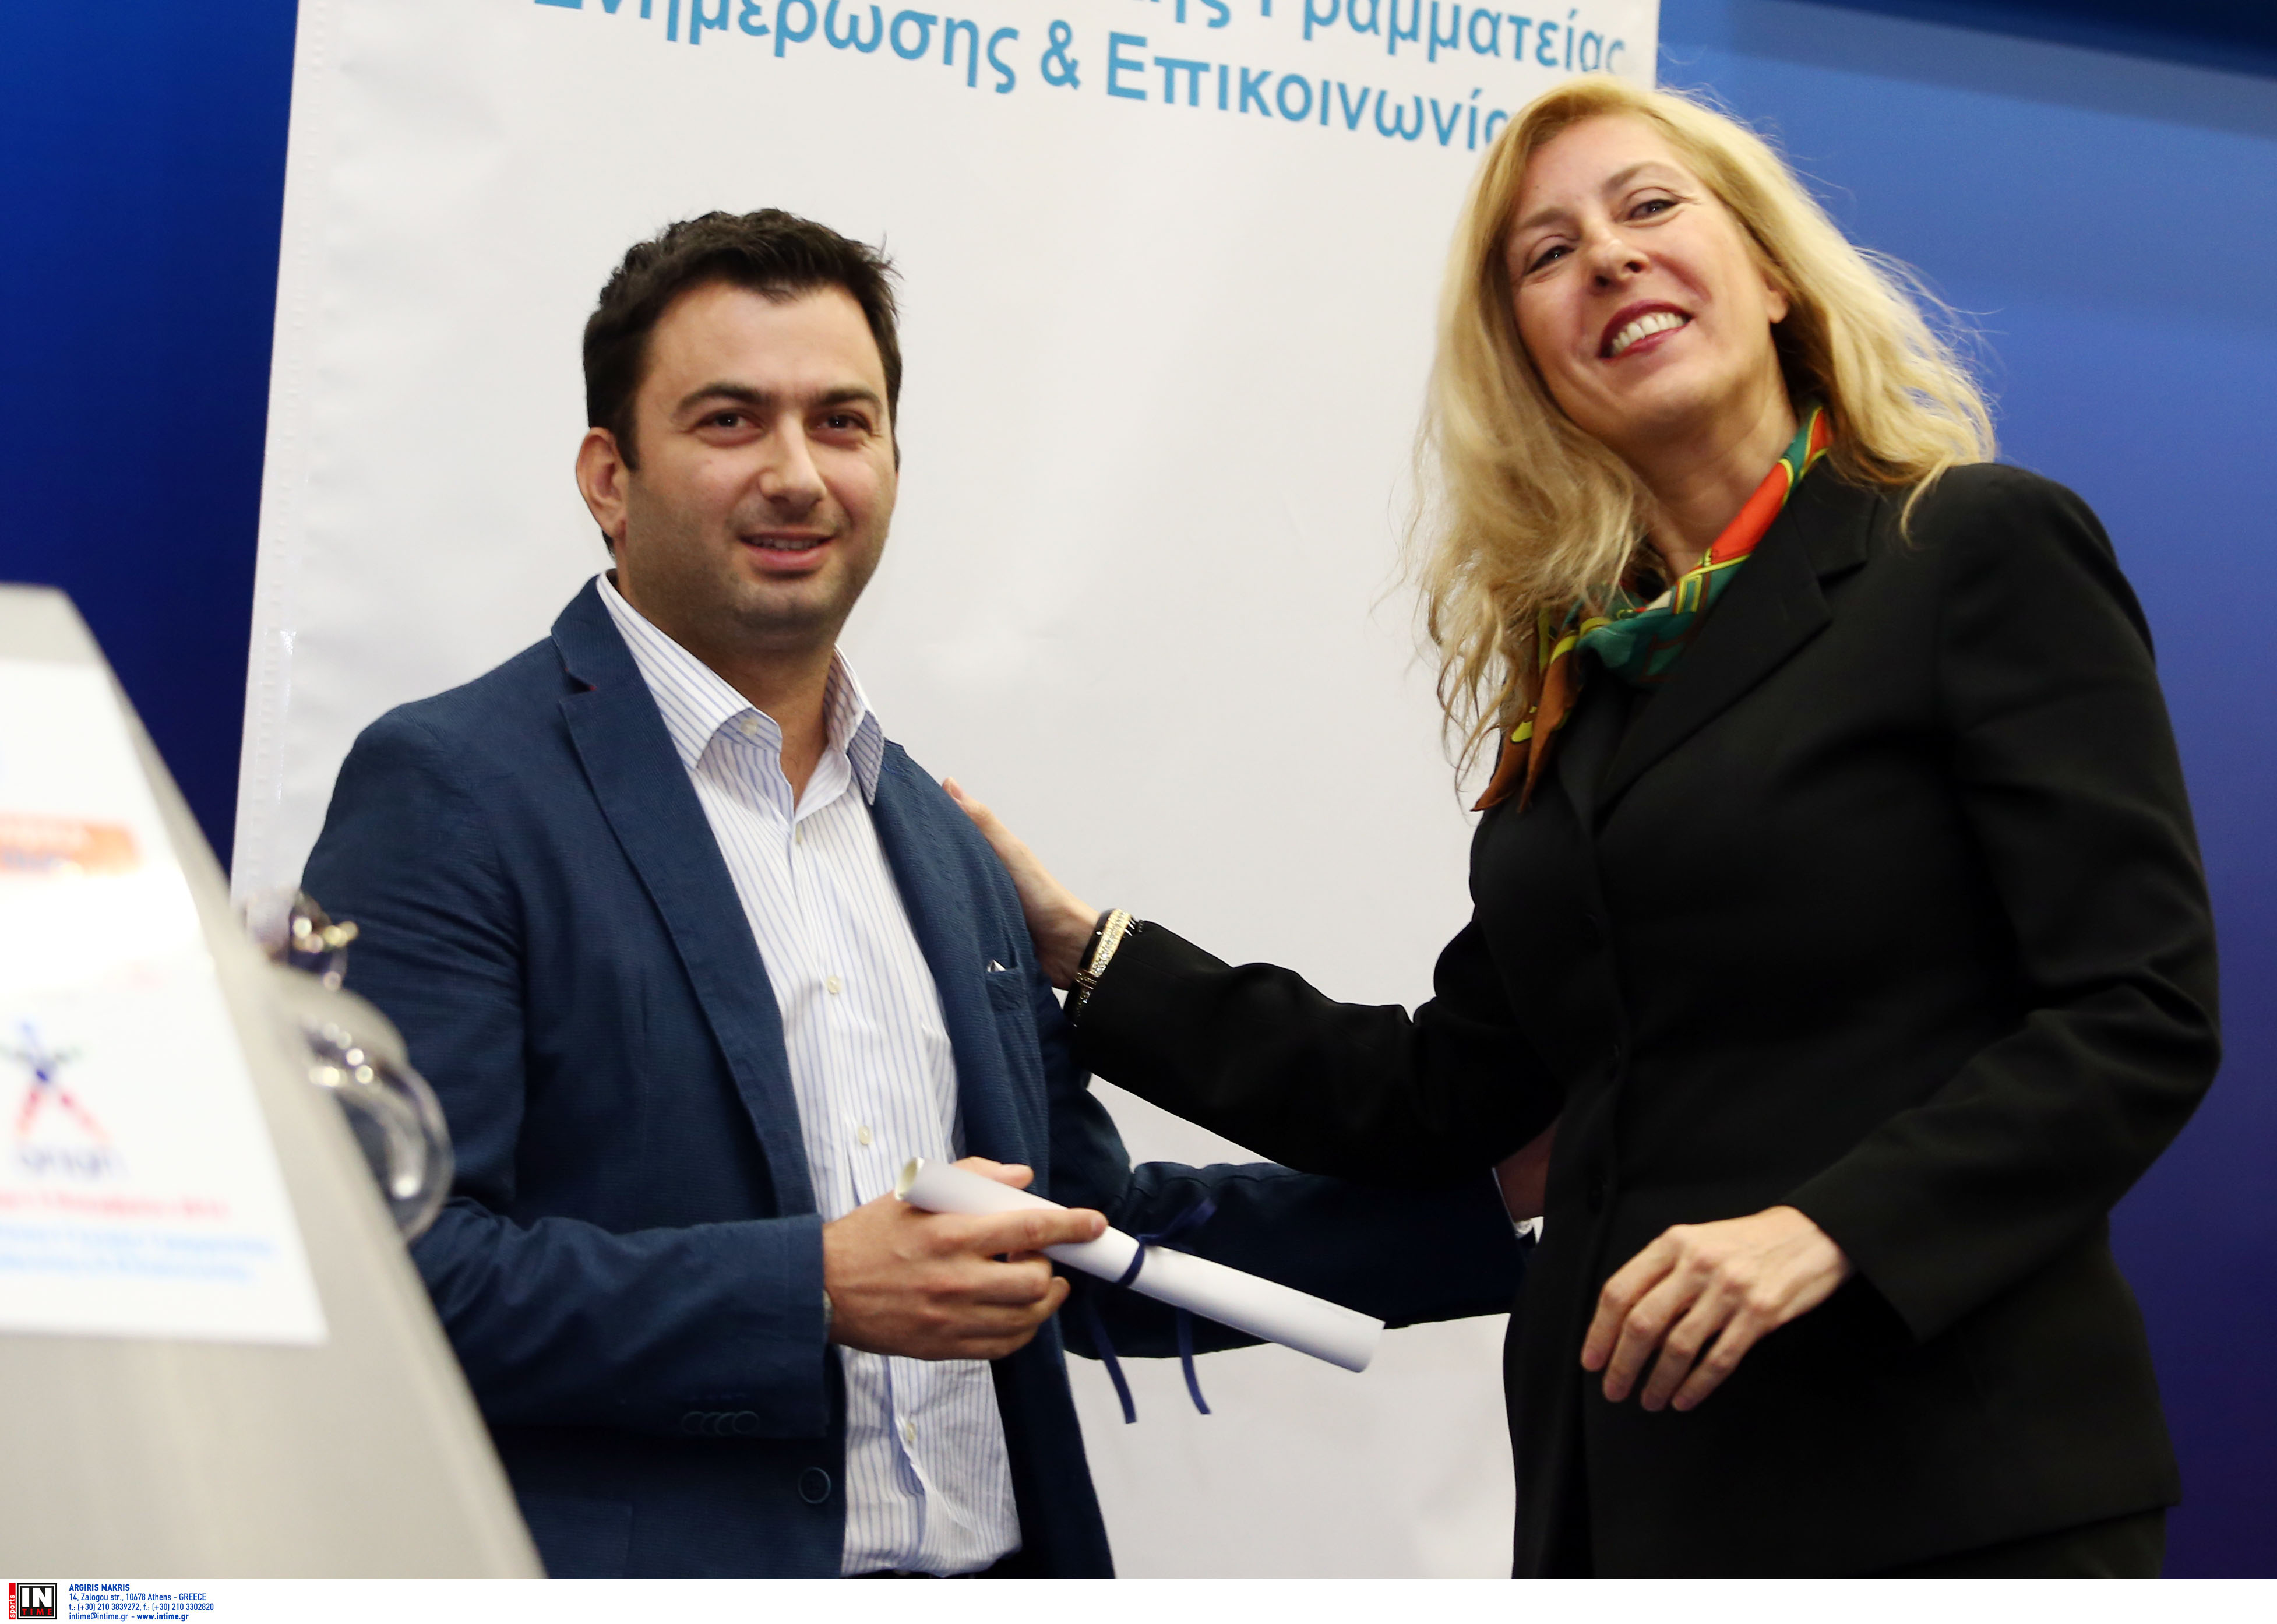 Ο Δημοσιογράφος του zougla.gr παραλαμβάνει το βραβείο από την πρόεδρο του ΕΤΑΜ ΜΜΕ Γιώτα Αντωνοπούλου